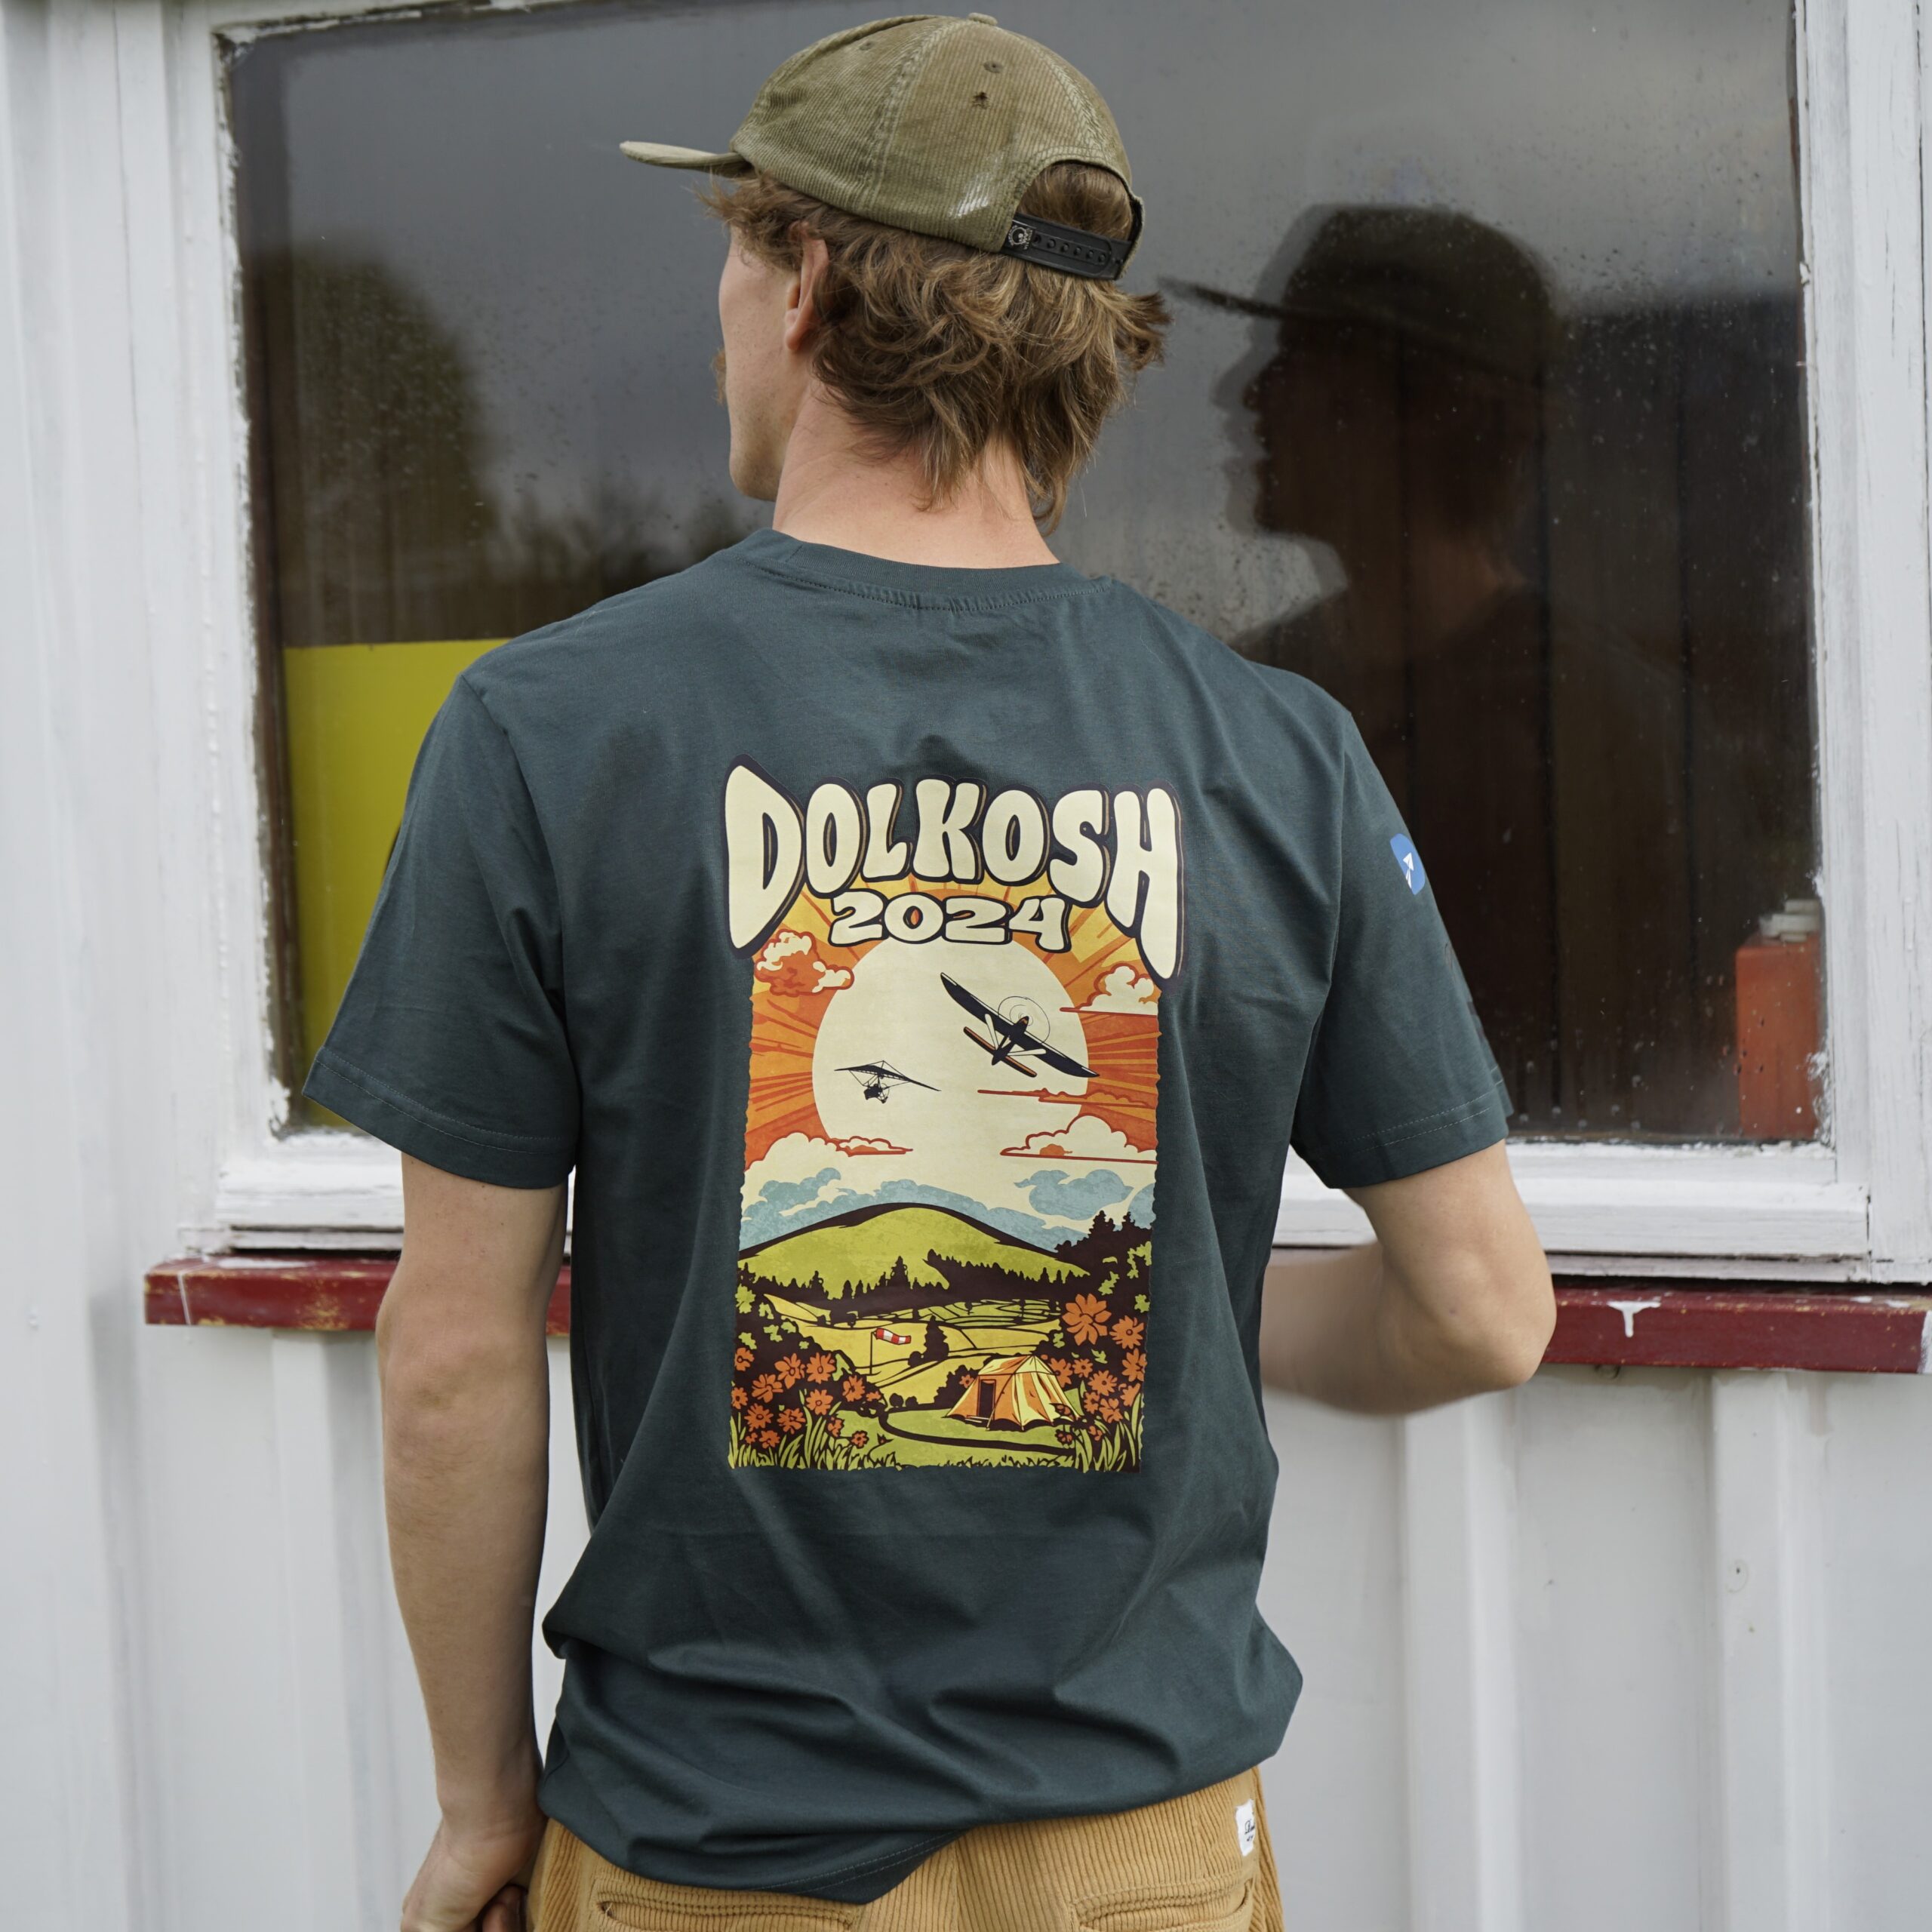 Dolmar Dayz T-Shirts